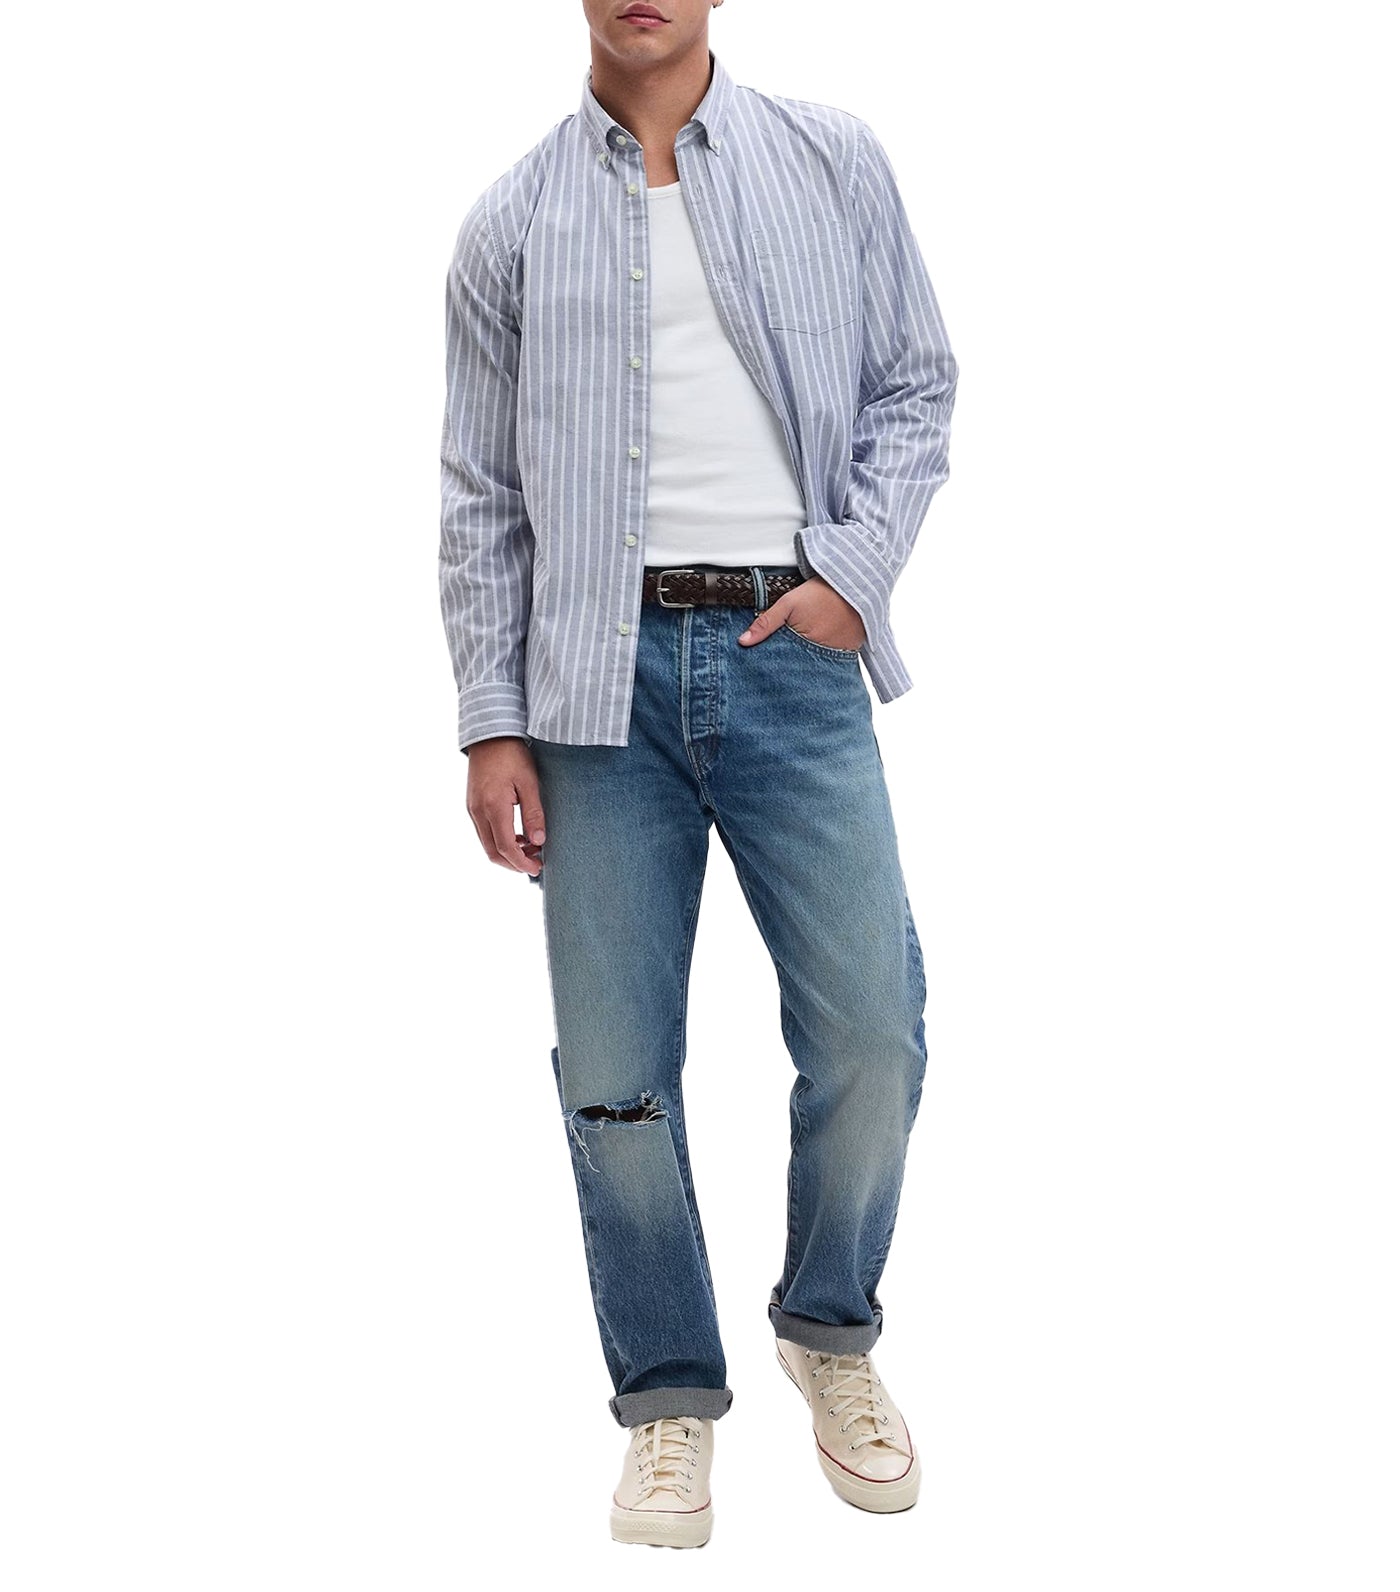 All-Day Poplin Shirt in Standard Fit Blue Stripe